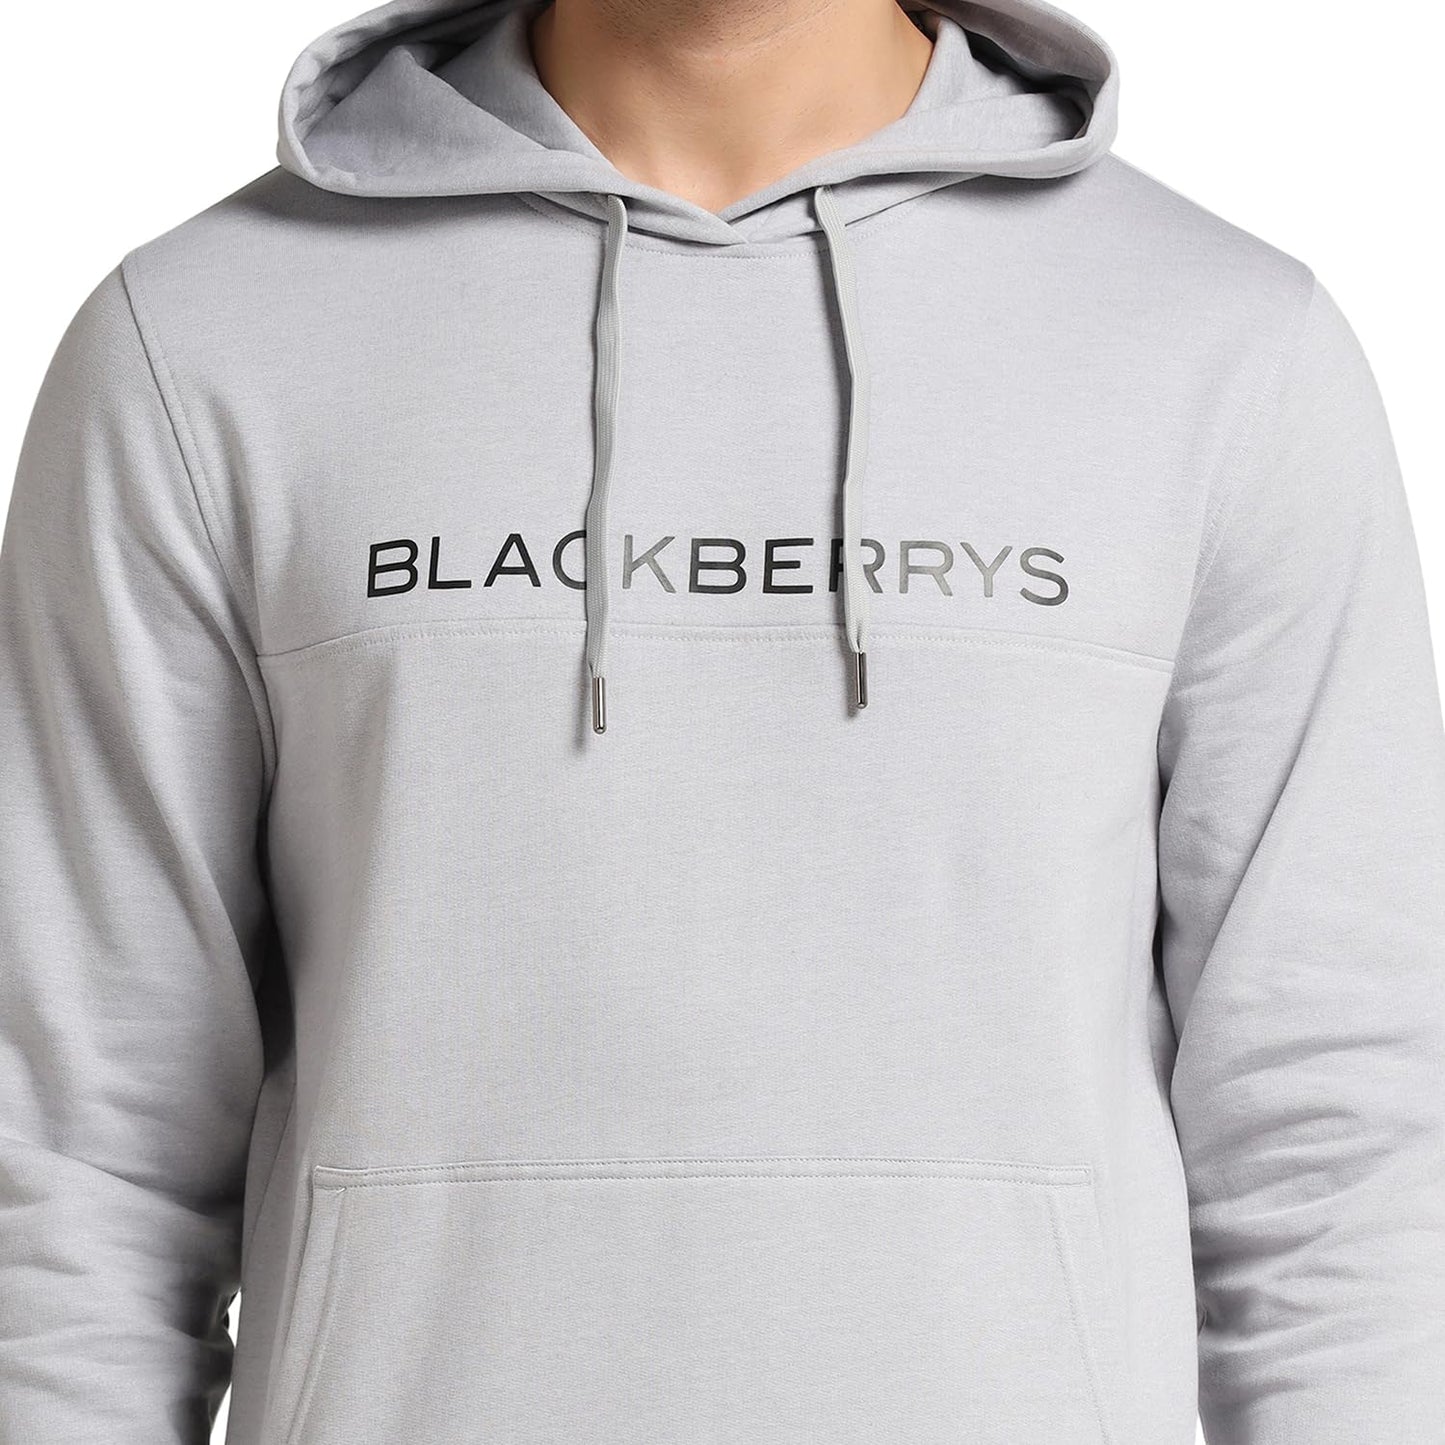 blackberrys Hoodie Grey Melange Printed Sweat-Shirt - Jaquel 